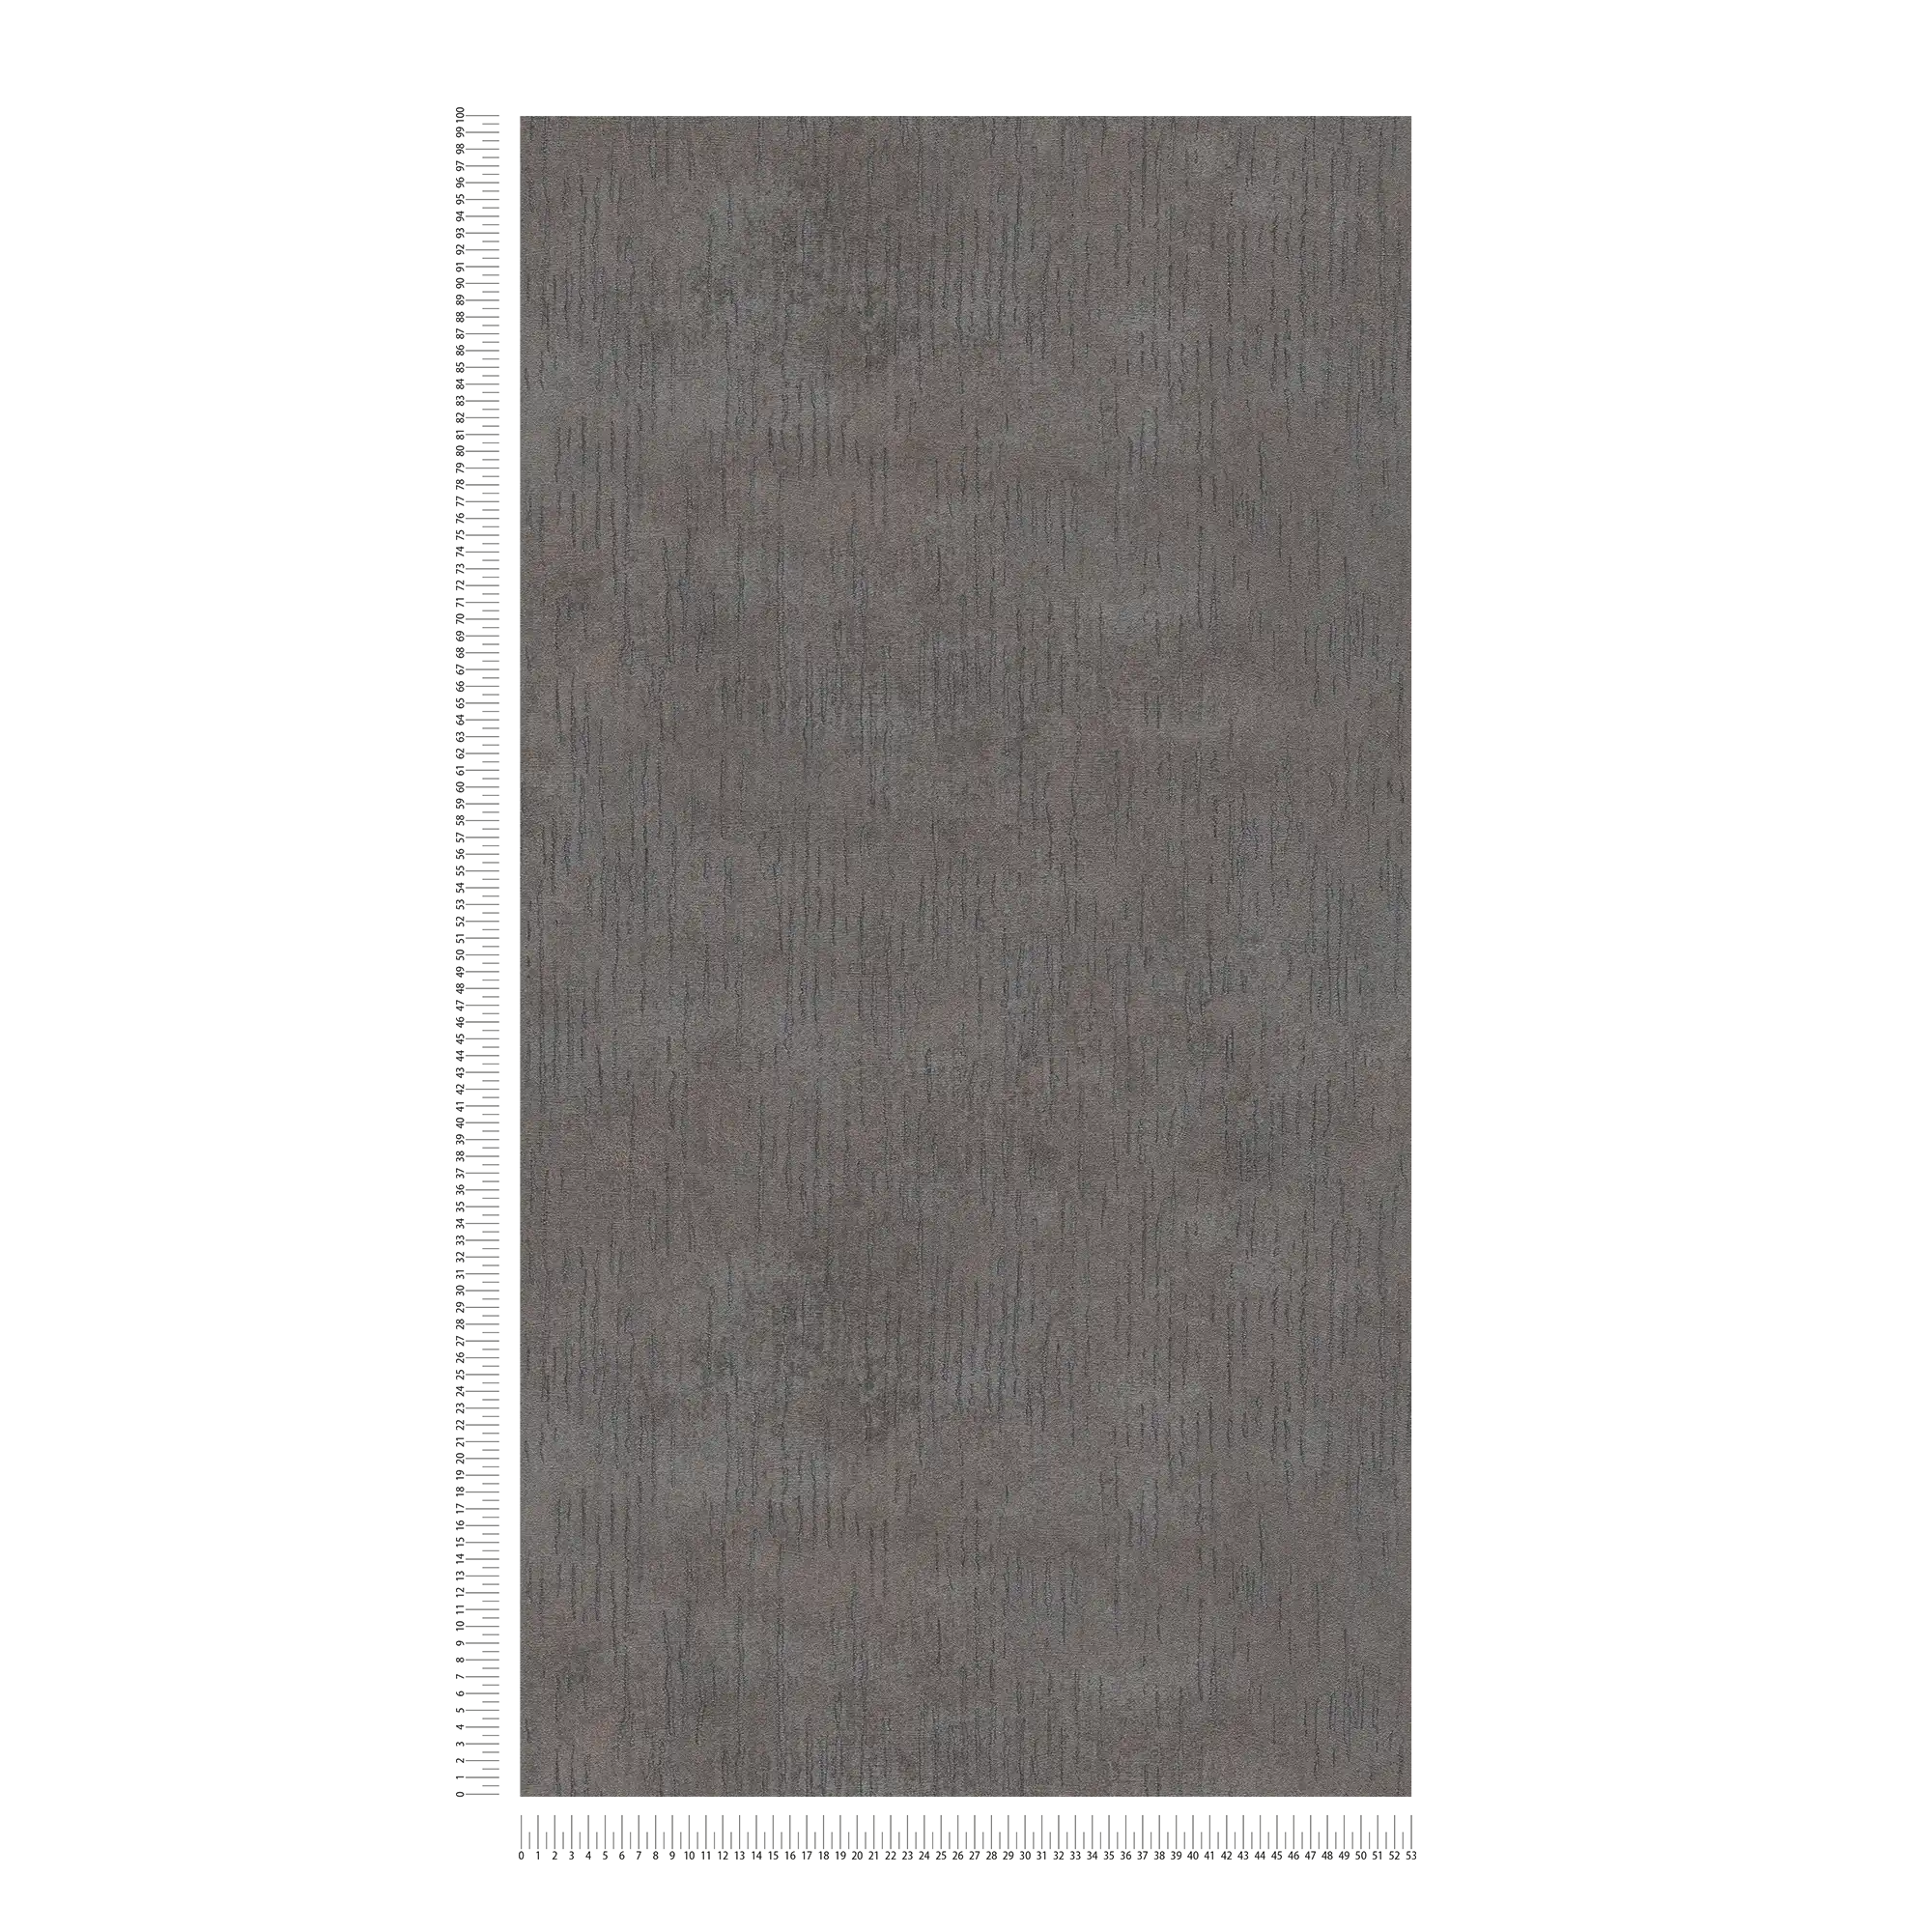             Effen behang antraciet met metallic look - grijs, metallic, zwart
        